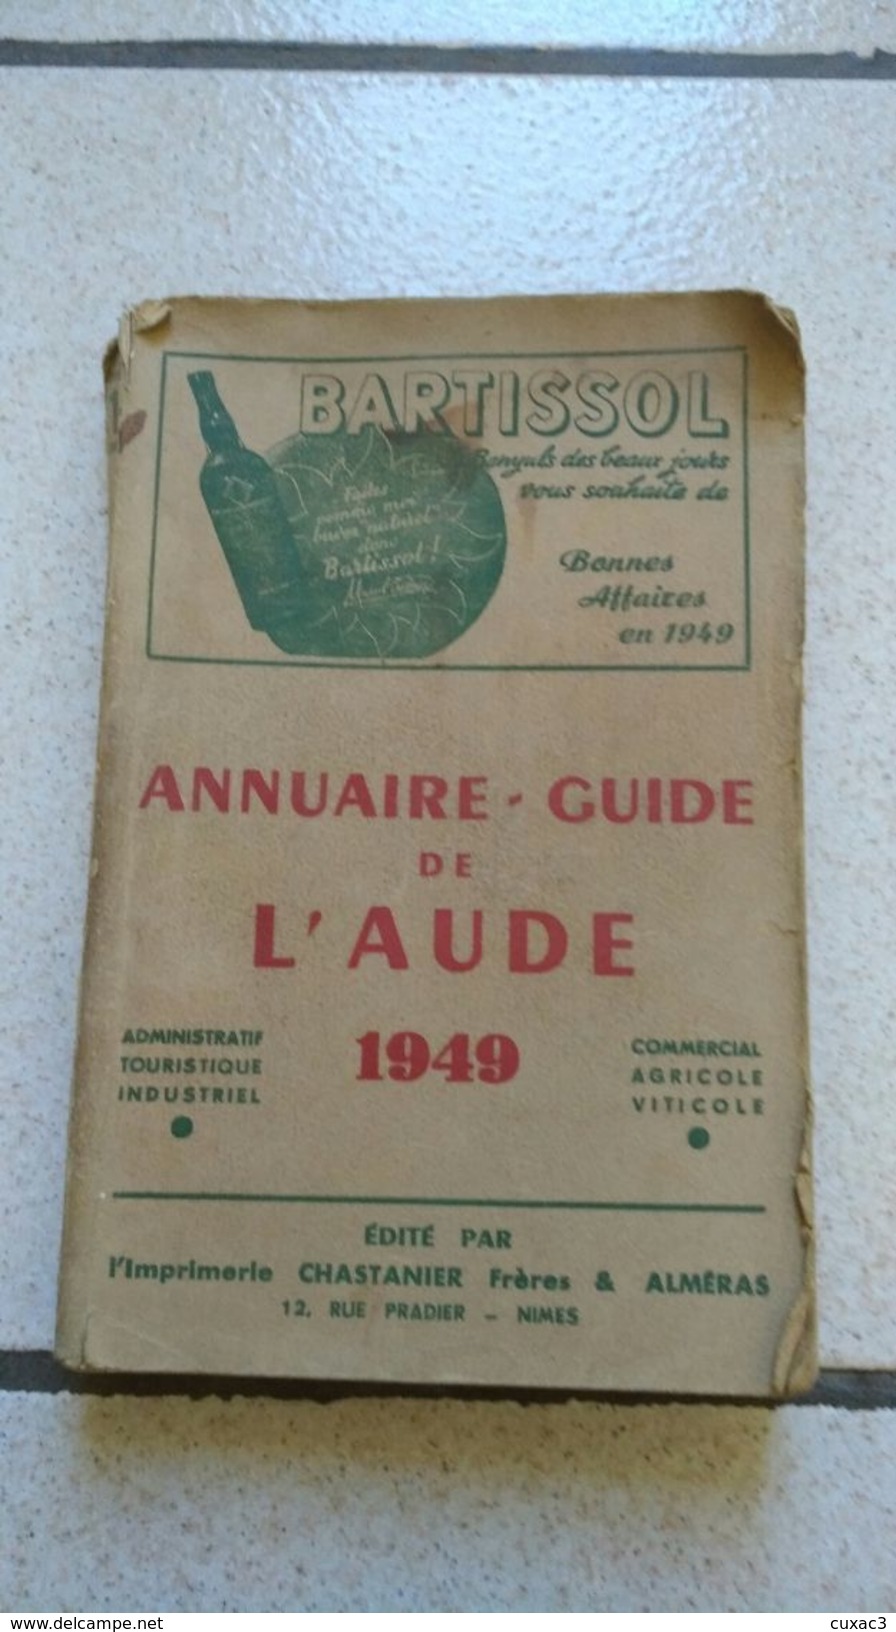 Annuaires-guide De L'aude 1949 - BARTISSOL - Annuaires Téléphoniques